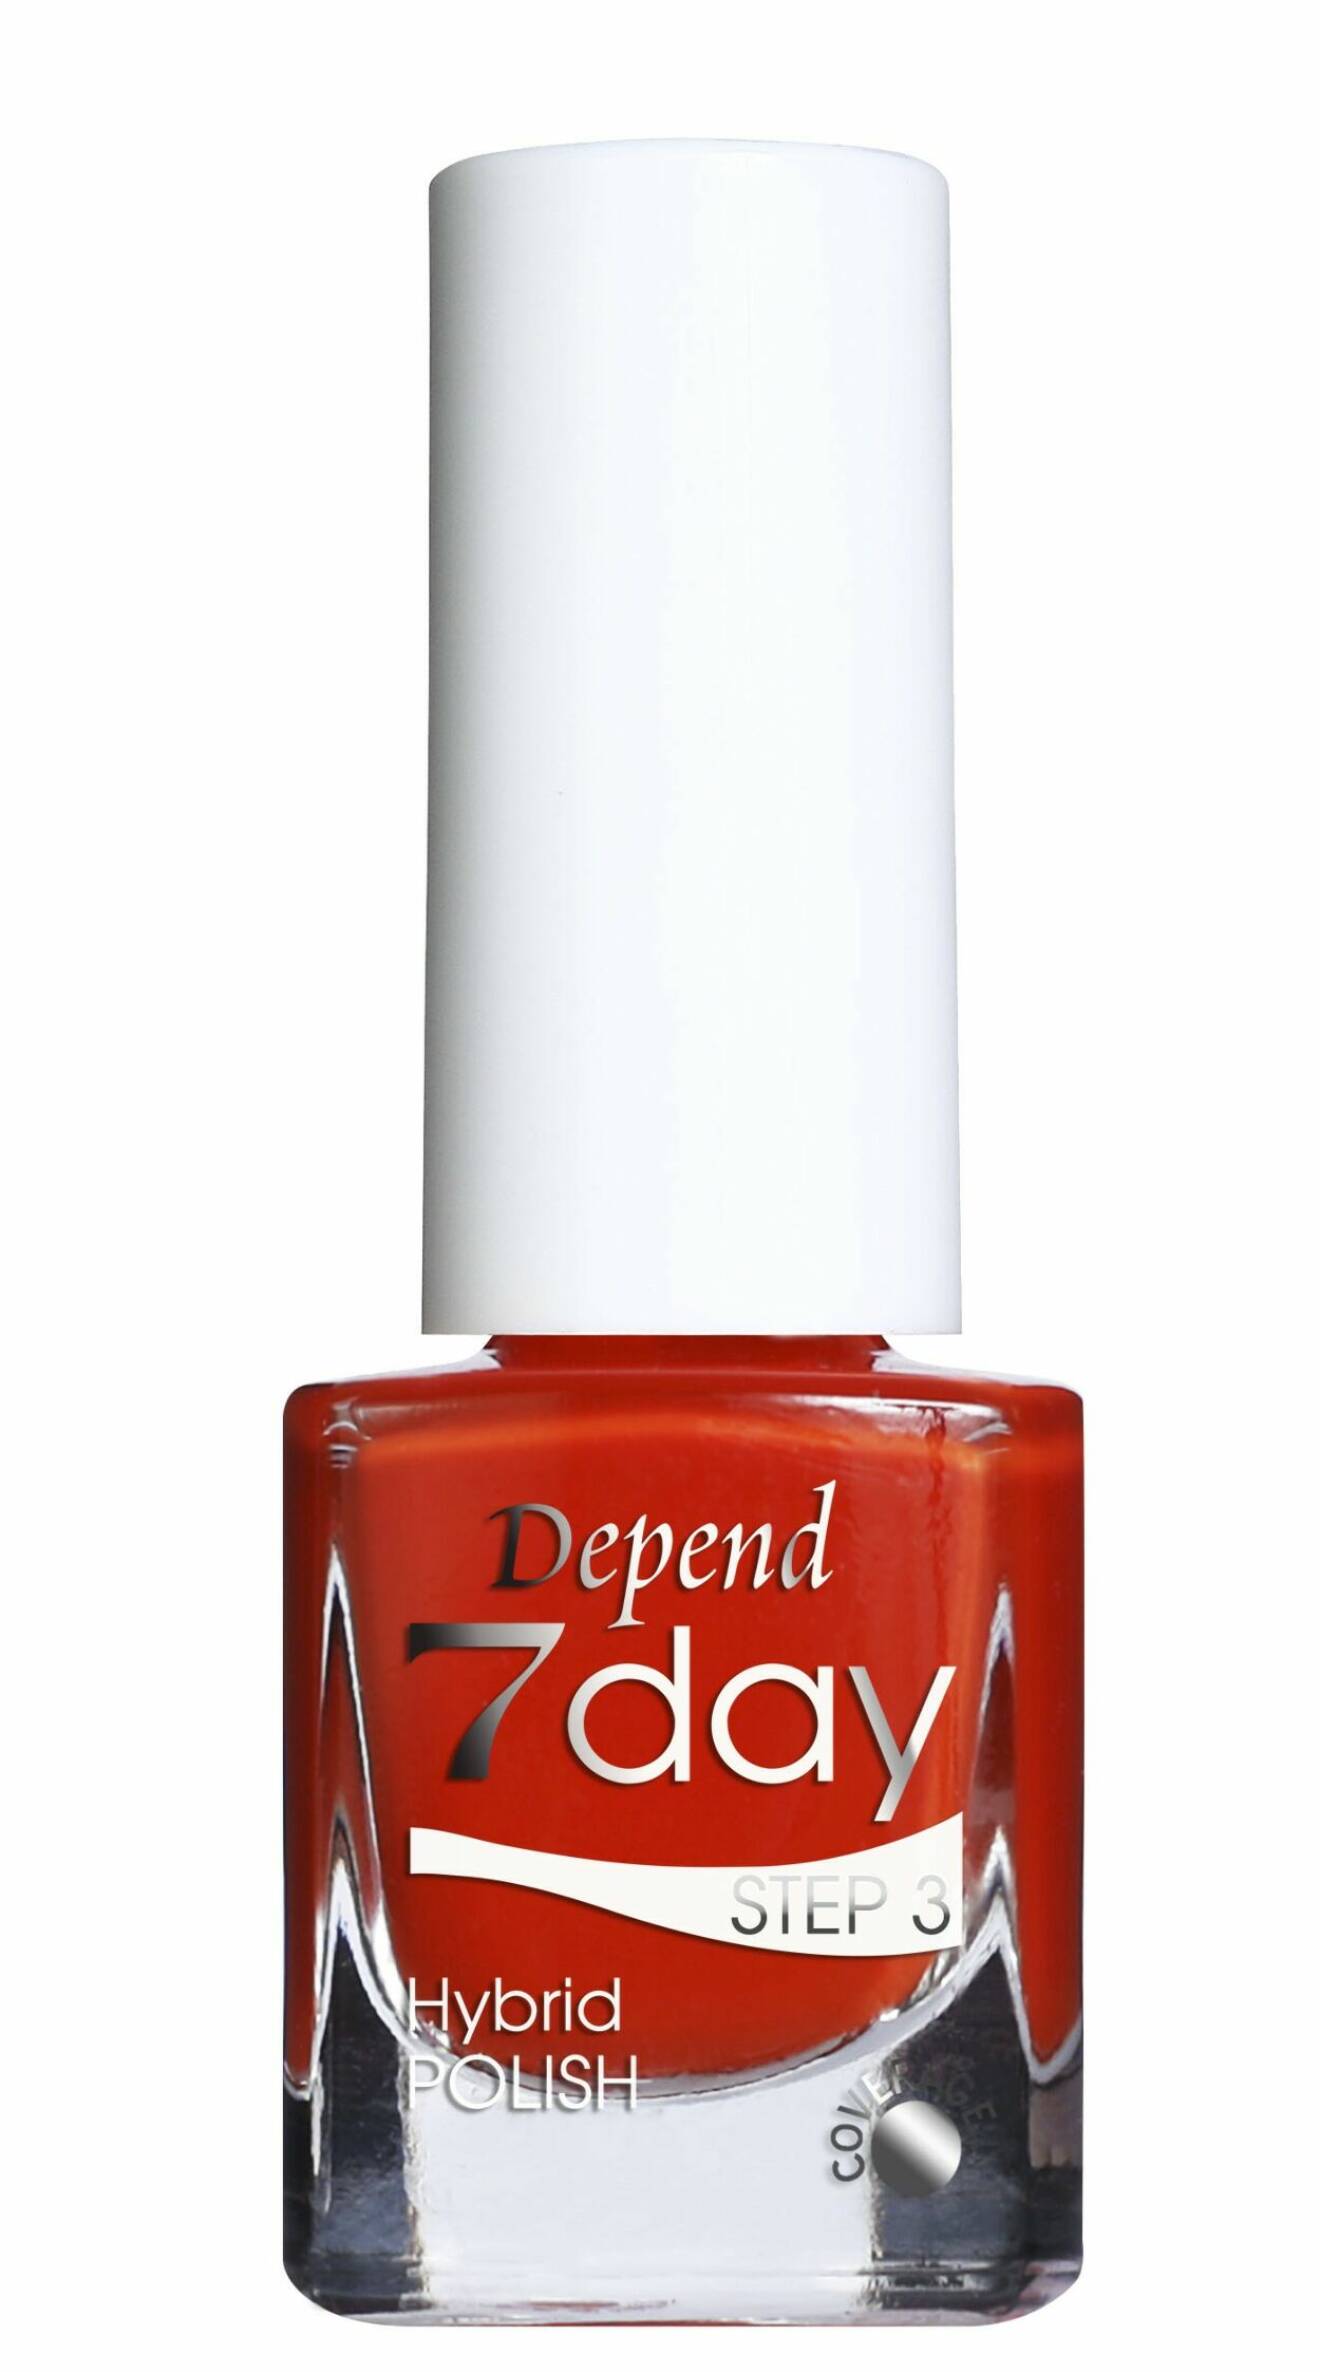 Röda nagellacket 7 Day Hybrid Polish i färgen You Got Burned från Depend